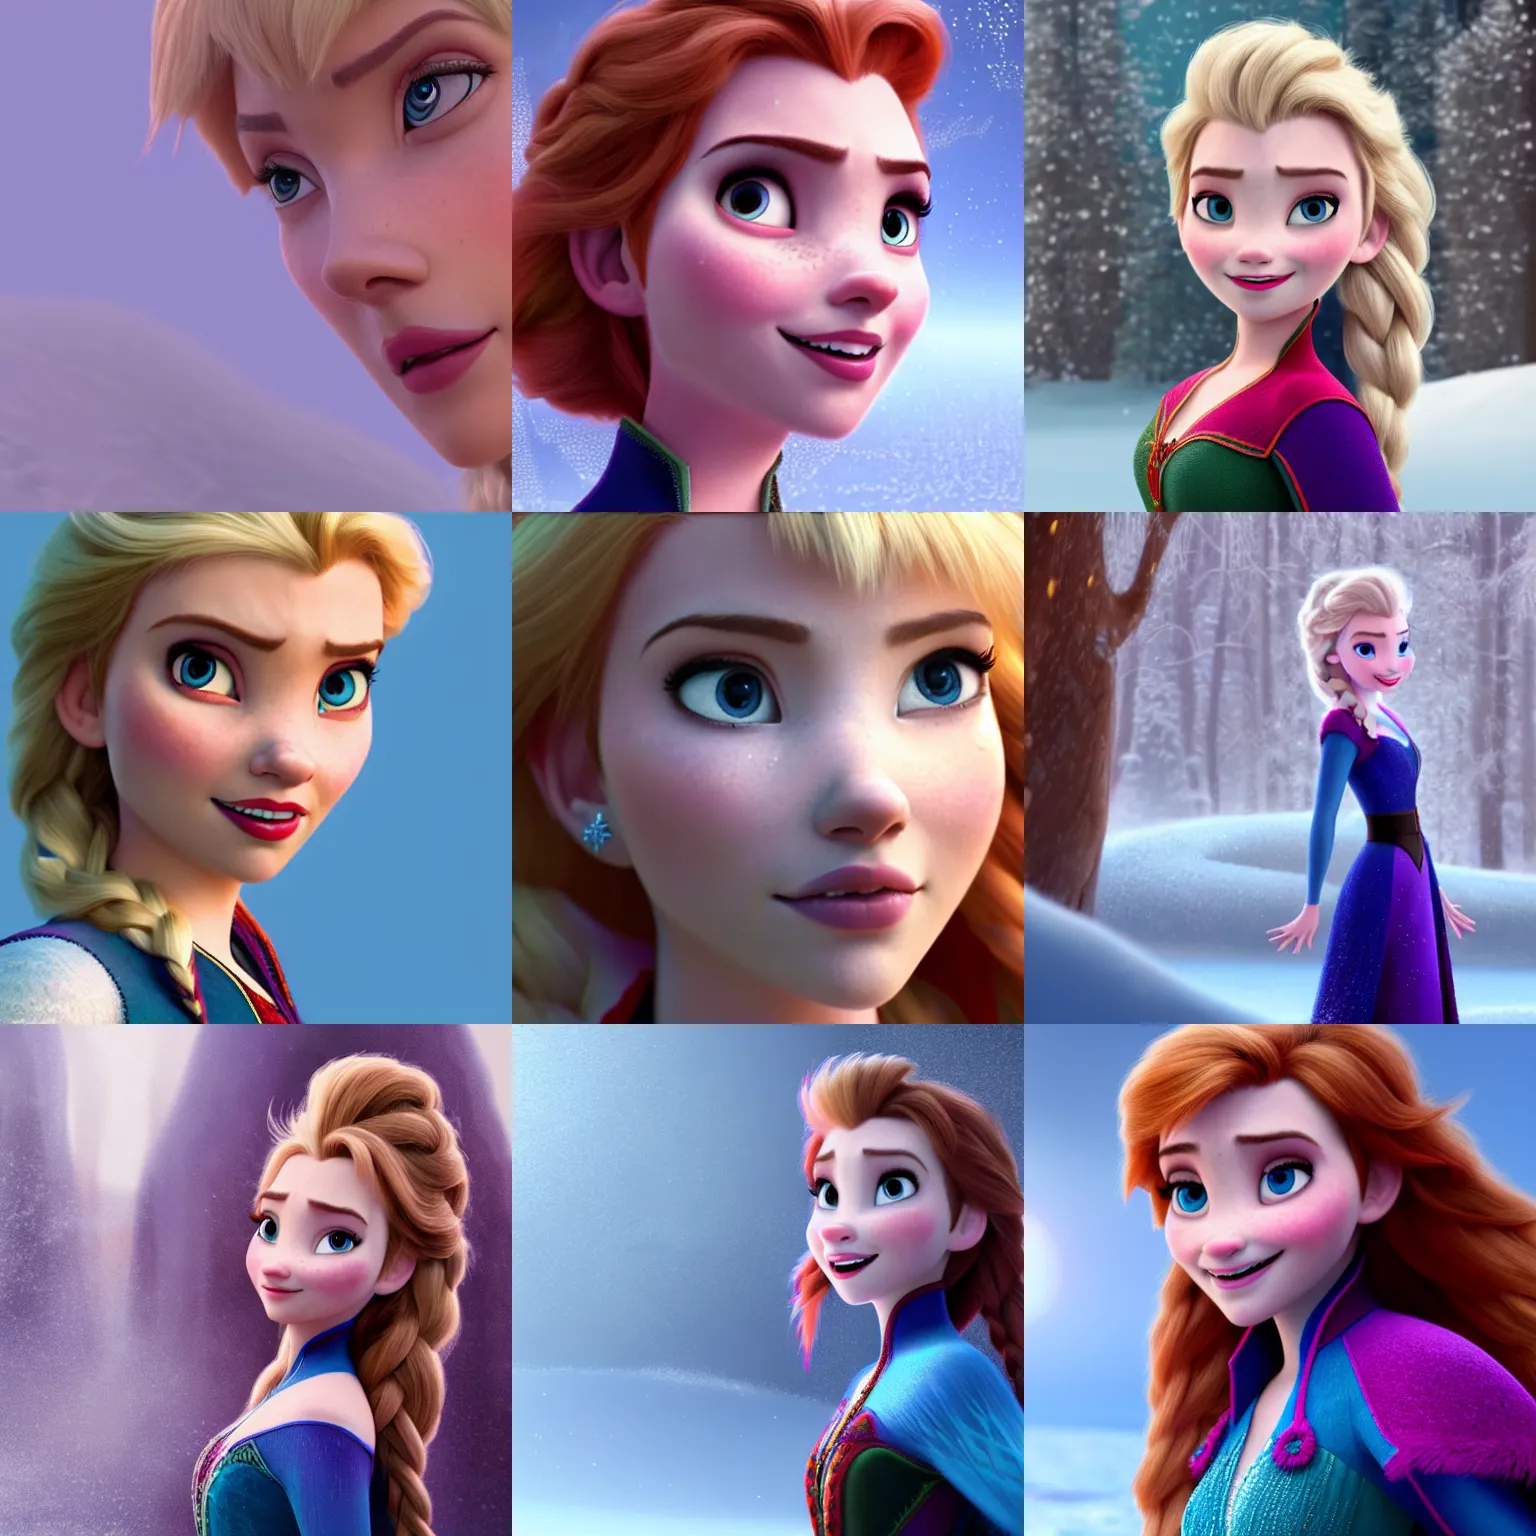 Image similar to scarlett johansson in Frozen Movie, High quality illustration, trending on artstation, octane render, 4k, Pixar rendering,